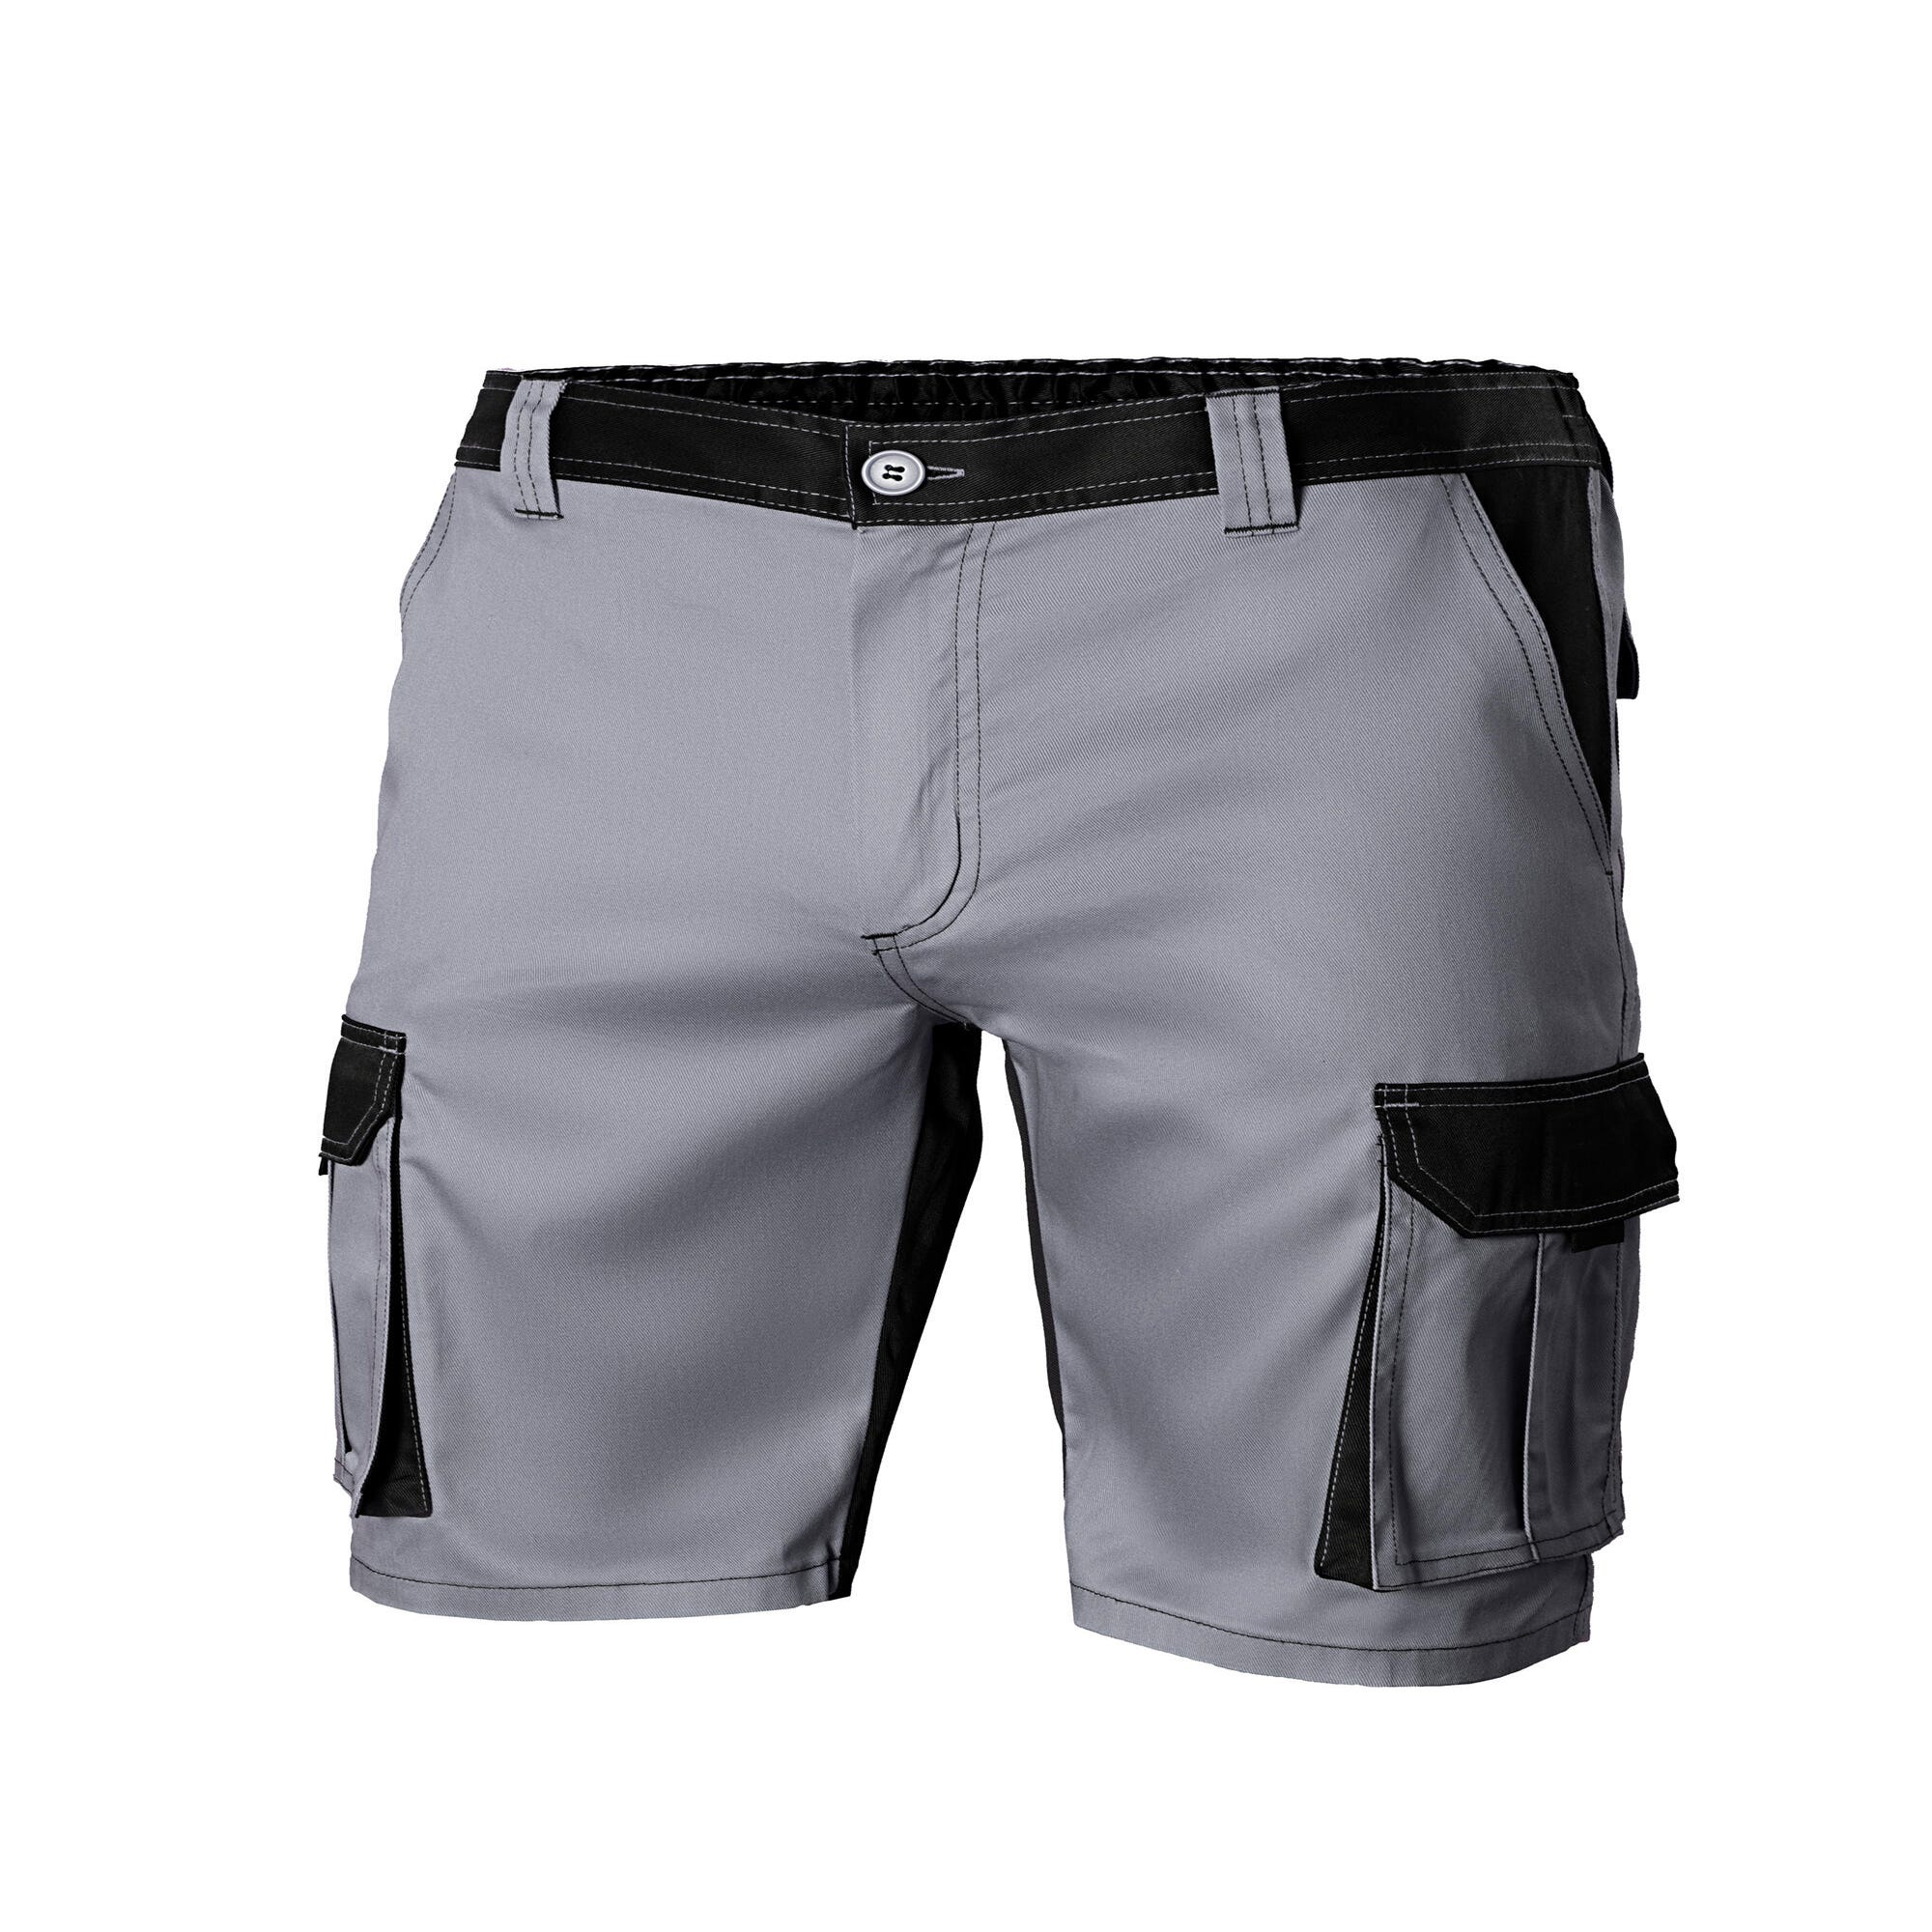 Pantalones cortos detrabajo, multibolsillos, resistentes, gris/amarillo  talla 38/40 s